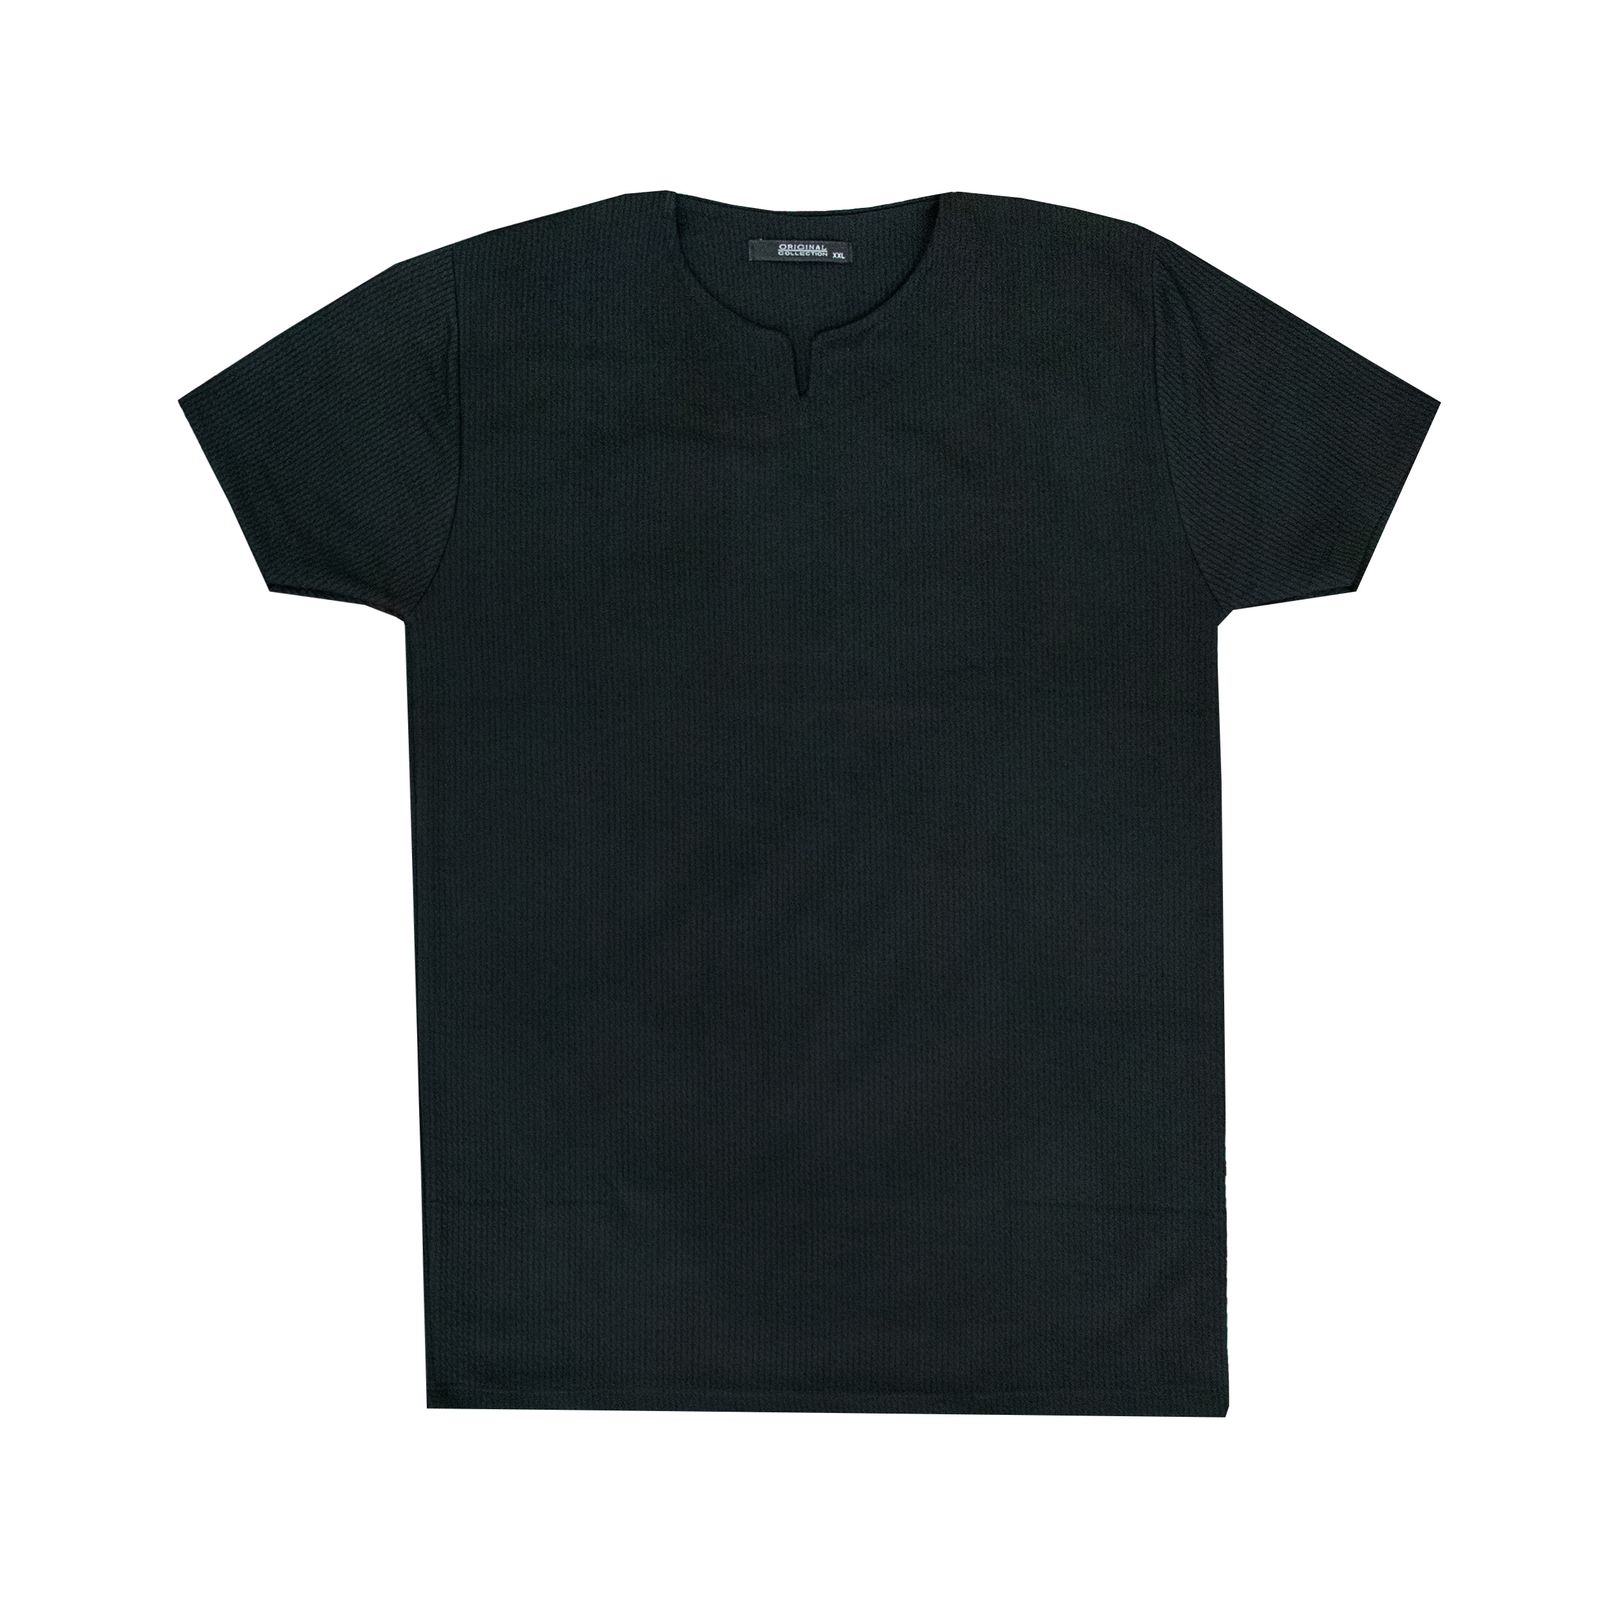 تی شرت آستین کوتاه مردانه کاملیا مدل کوبایی کد 51677 رنگ مشکی -  - 3